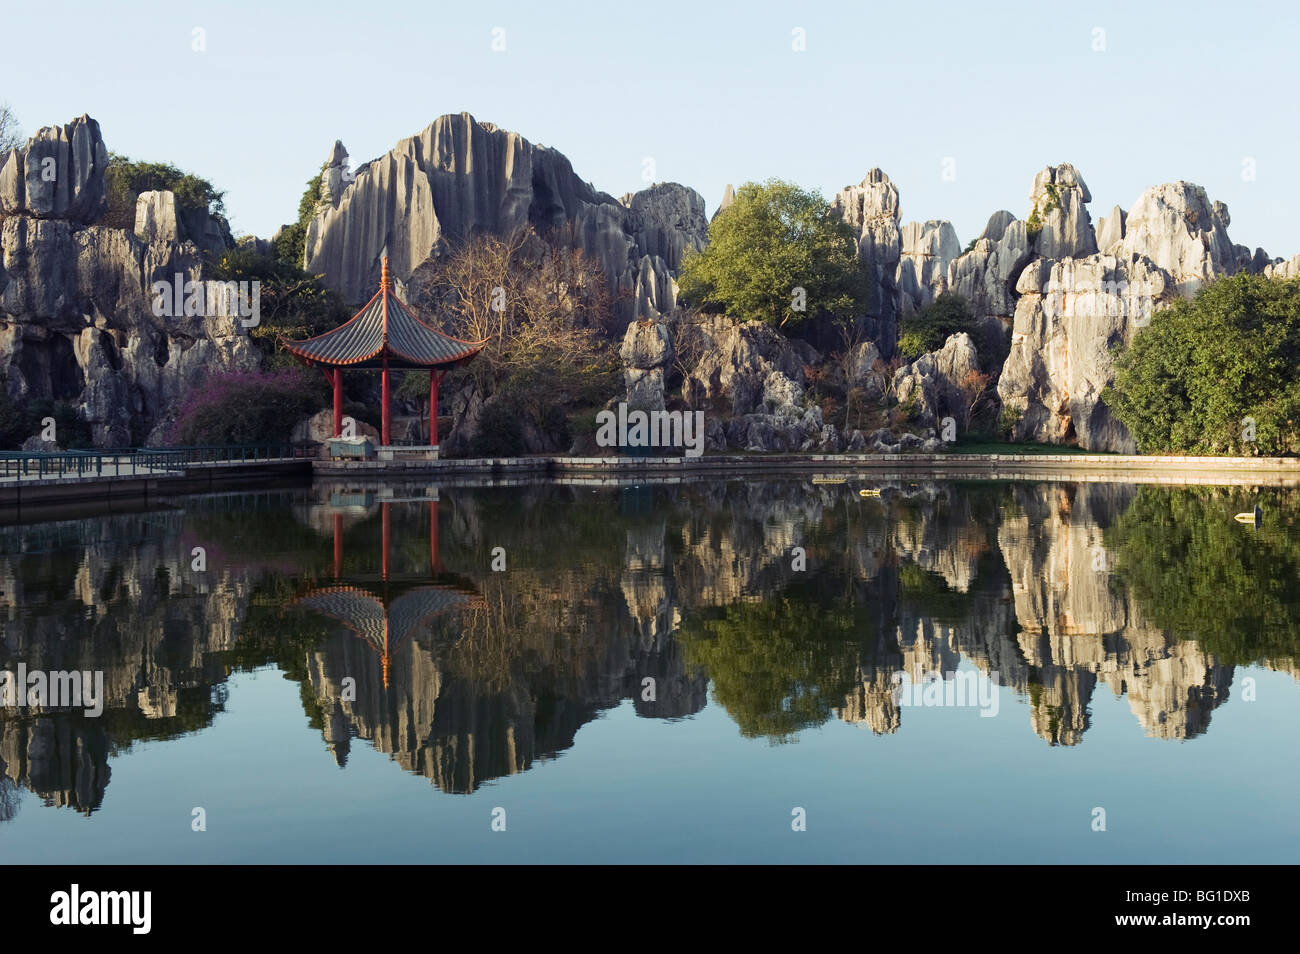 Reflet des paysages karstiques à Shilin Stone Forest, Site du patrimoine mondial de l'UNESCO, la Province du Yunnan, Chine, Asie Banque D'Images